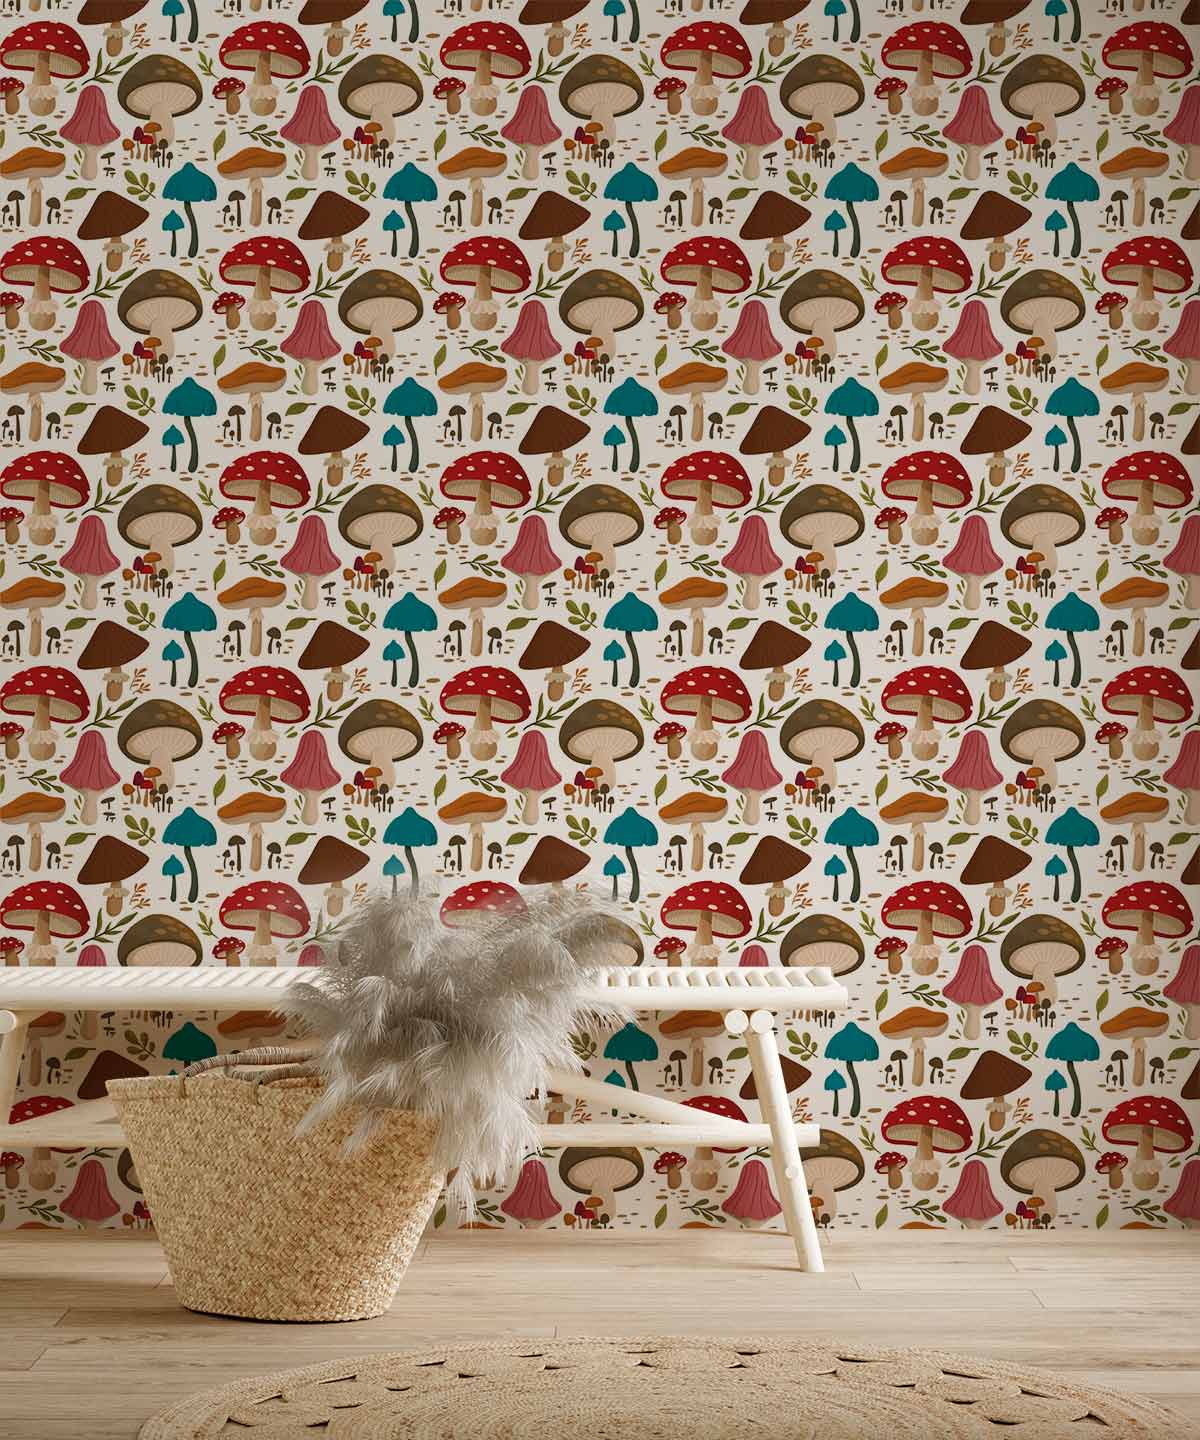 custom colorful mushrooms wallpaper mural for hallway decor